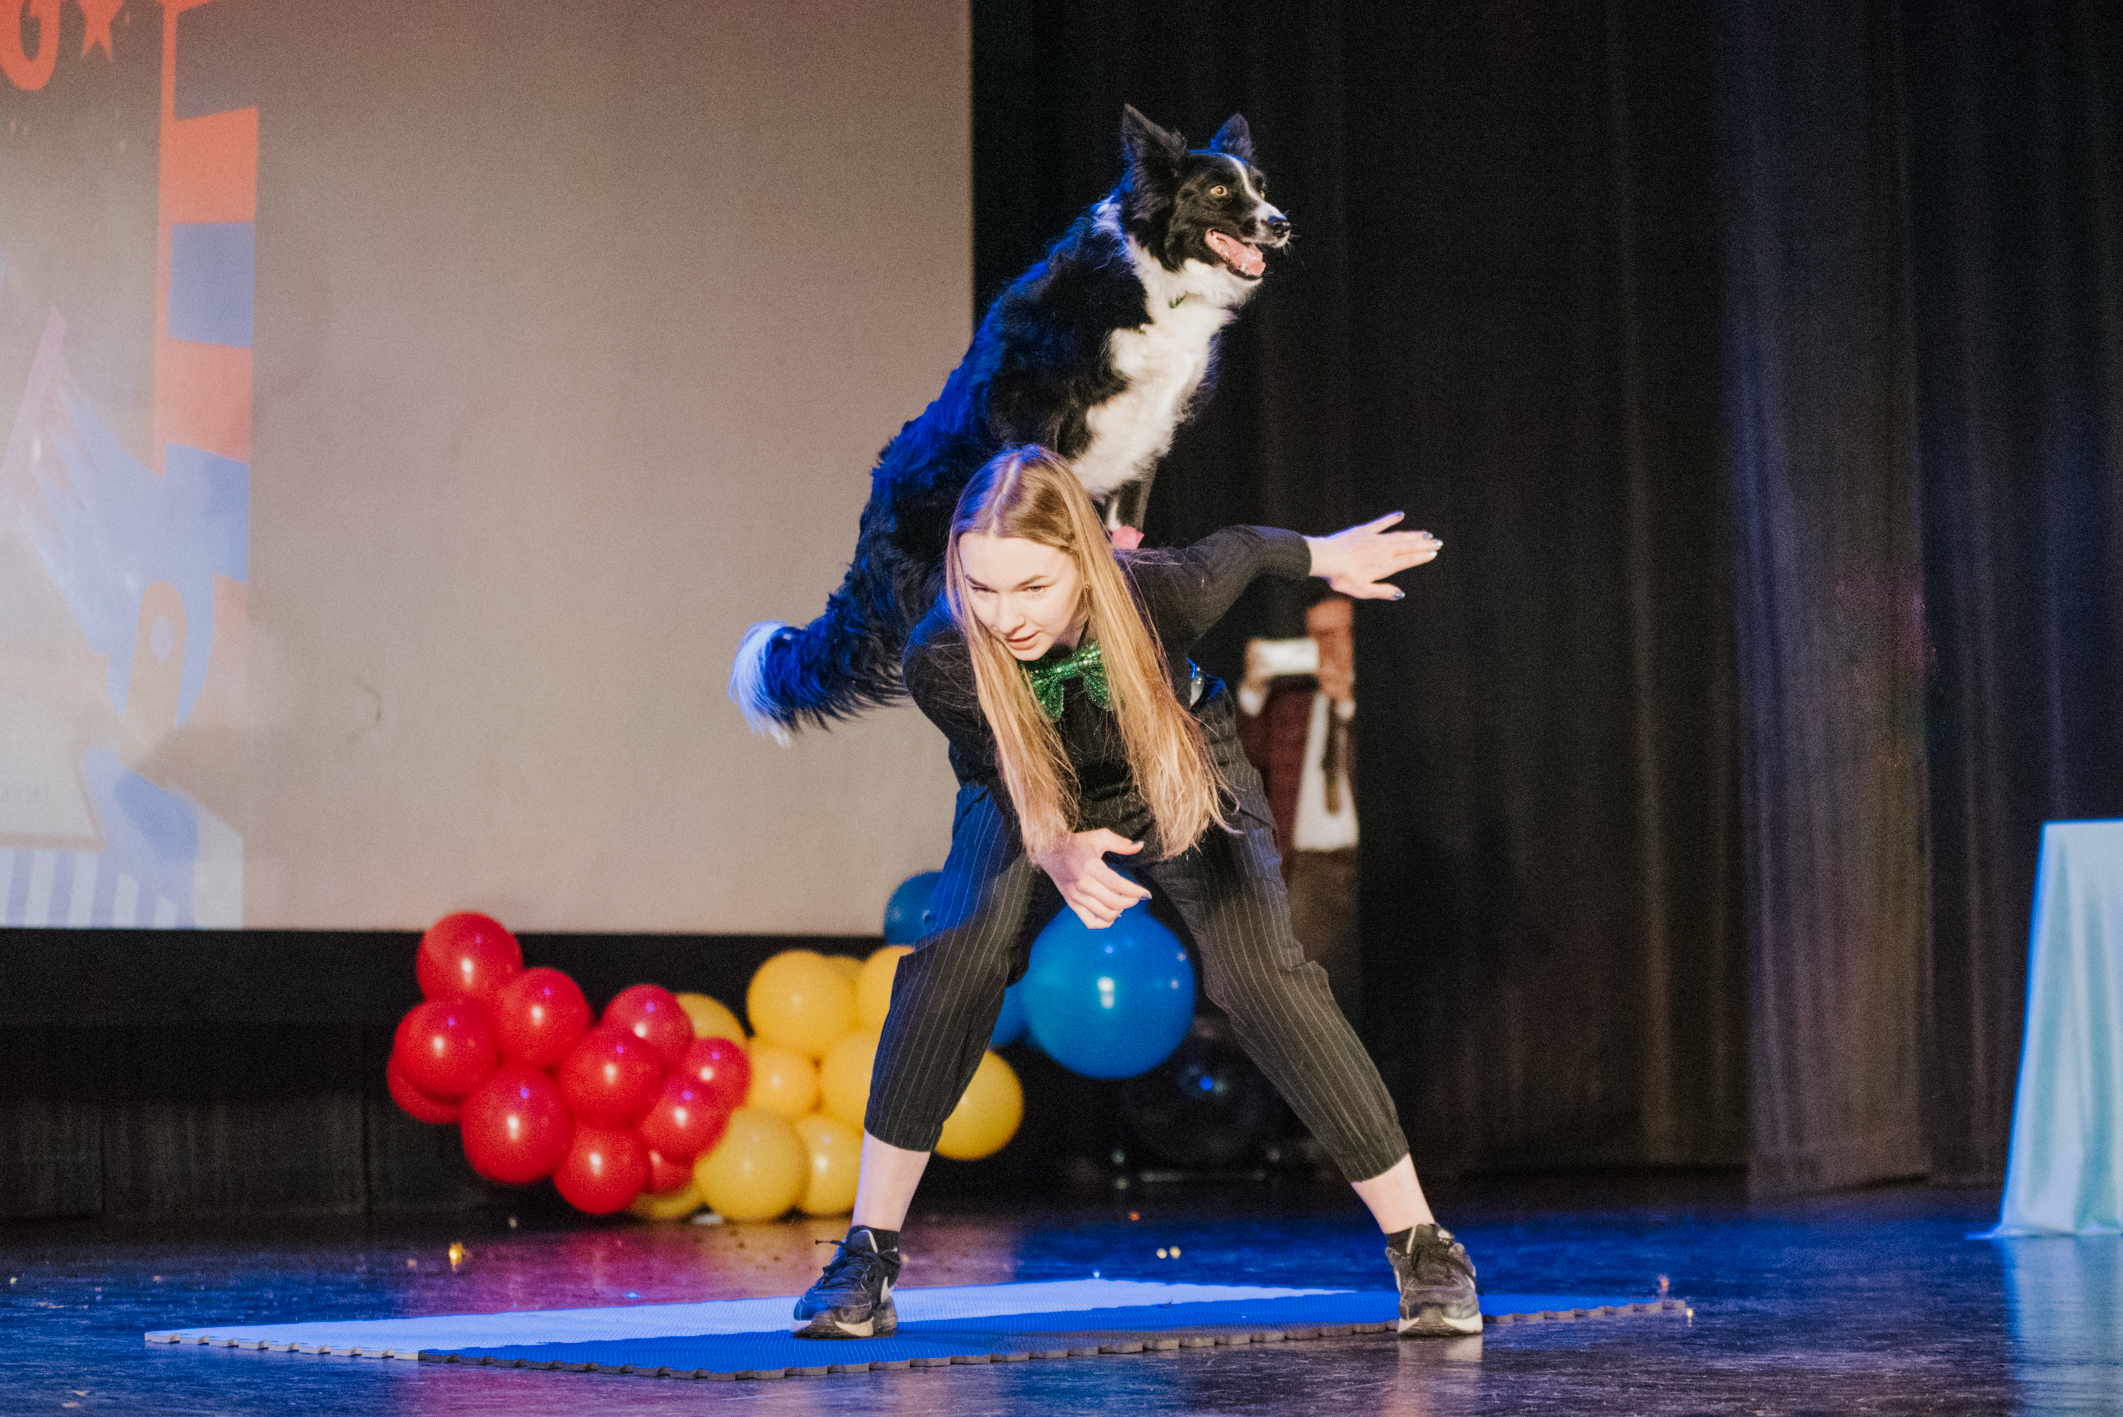 W przerwie między występami uczestników na scenie pojawiła się Wiktoria wraz ze swoim psem Freją. Psiak zaprezentował szereg sztuczek i akrobacji